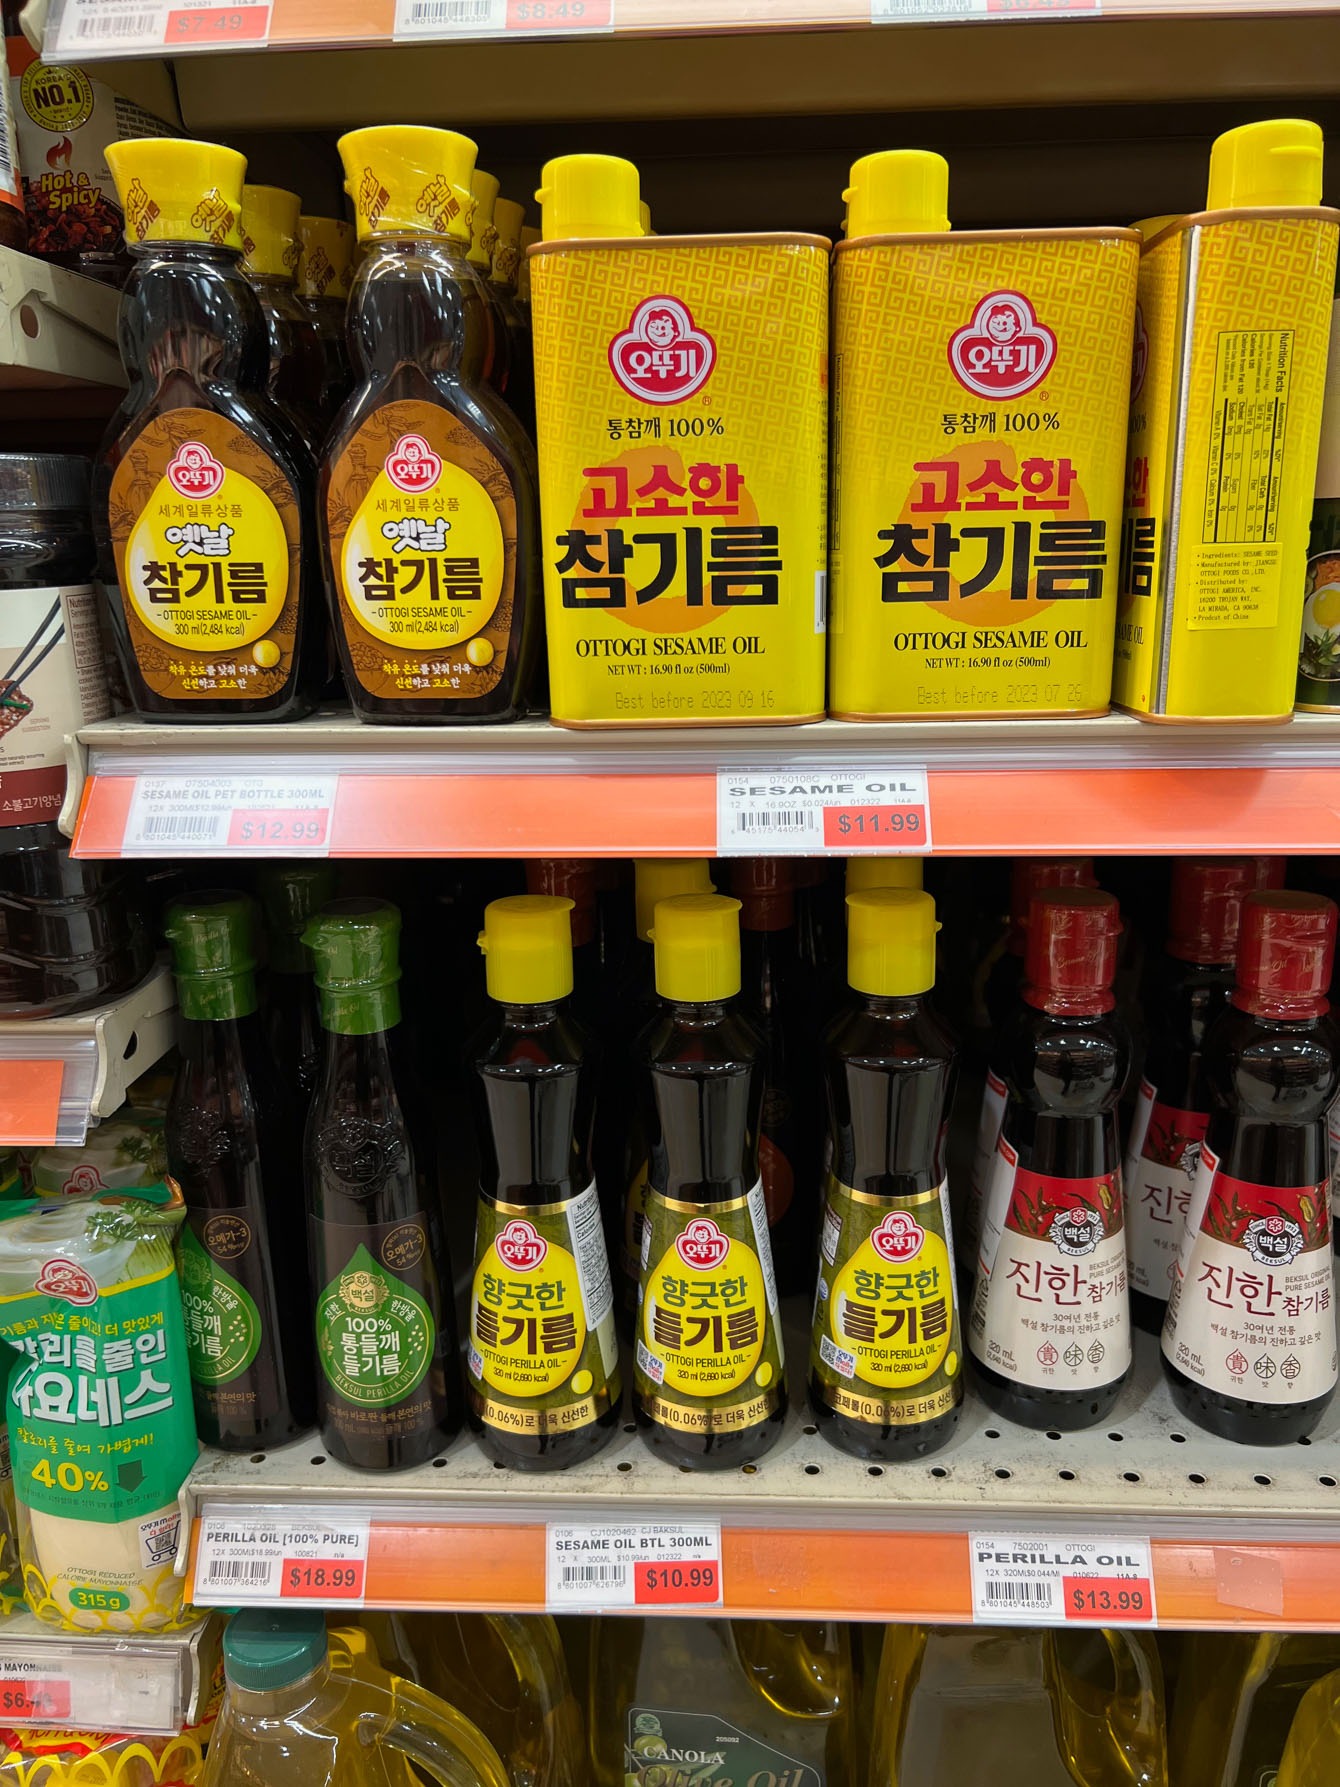 Korean sesame oil and perilla oil are common Korean pantry staples.